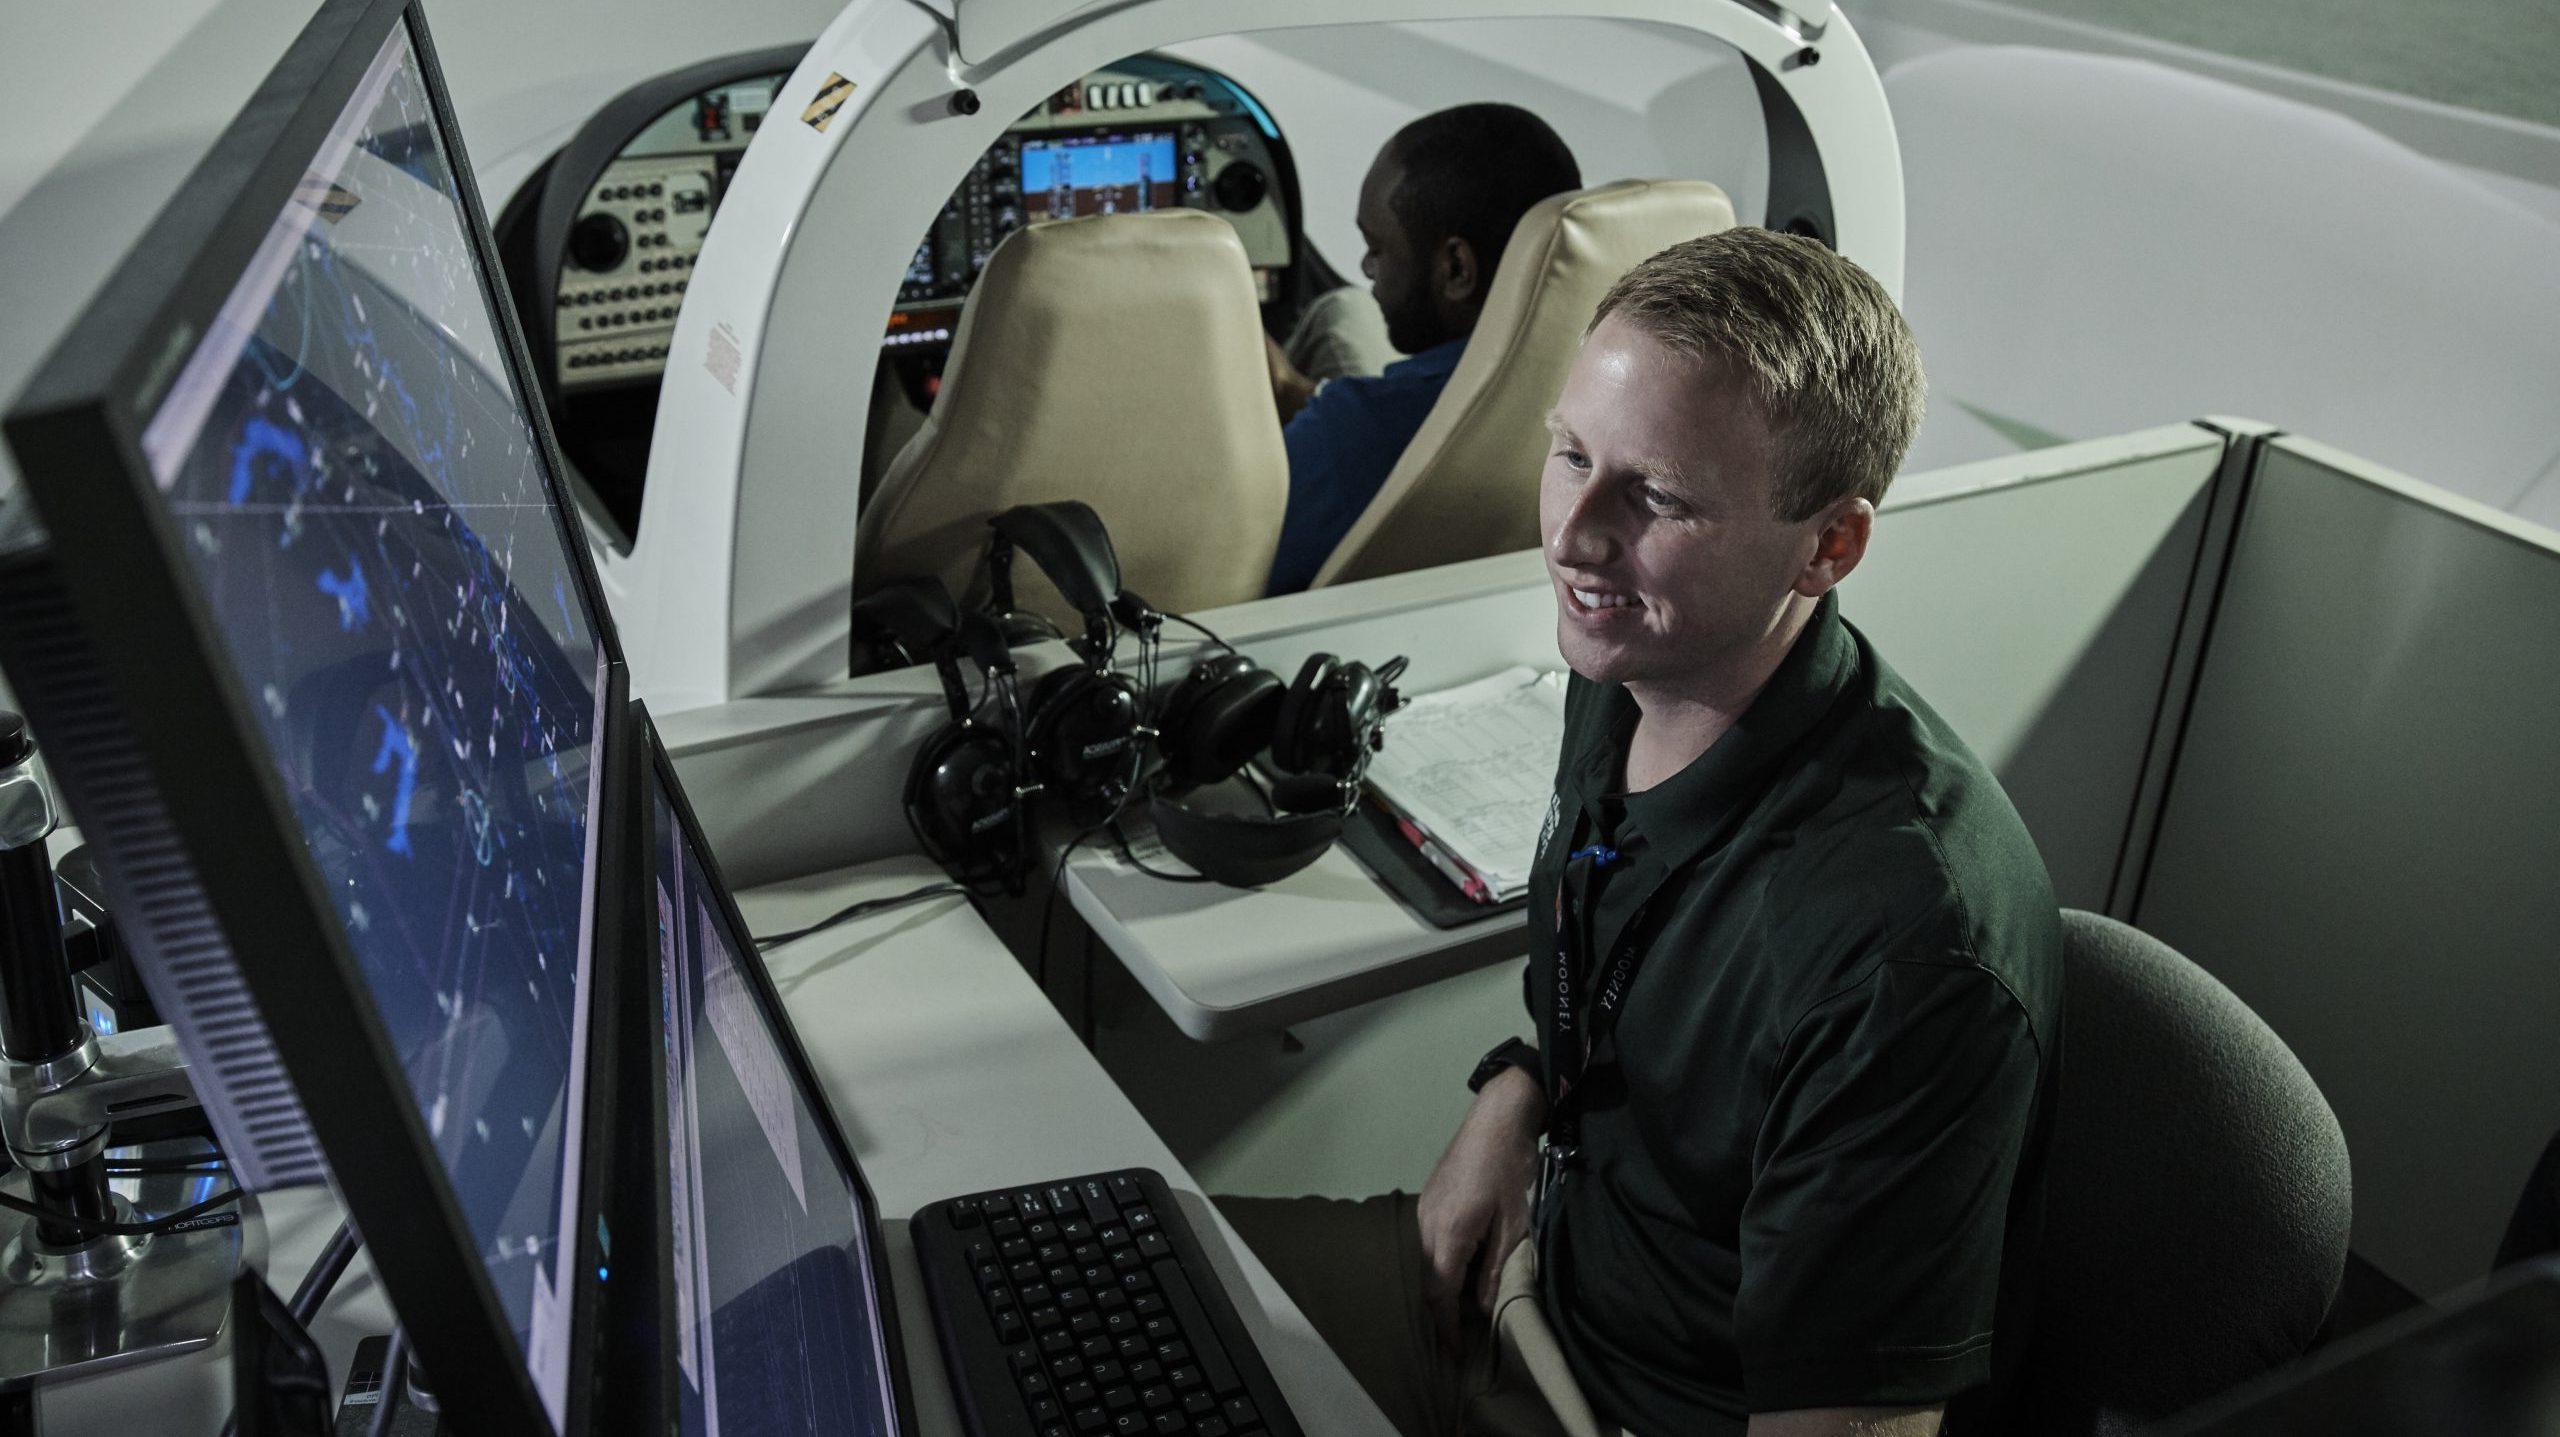 看着电脑屏幕的学生, 监察空中交通, 而另一个学生在他身后的飞行模拟器里.